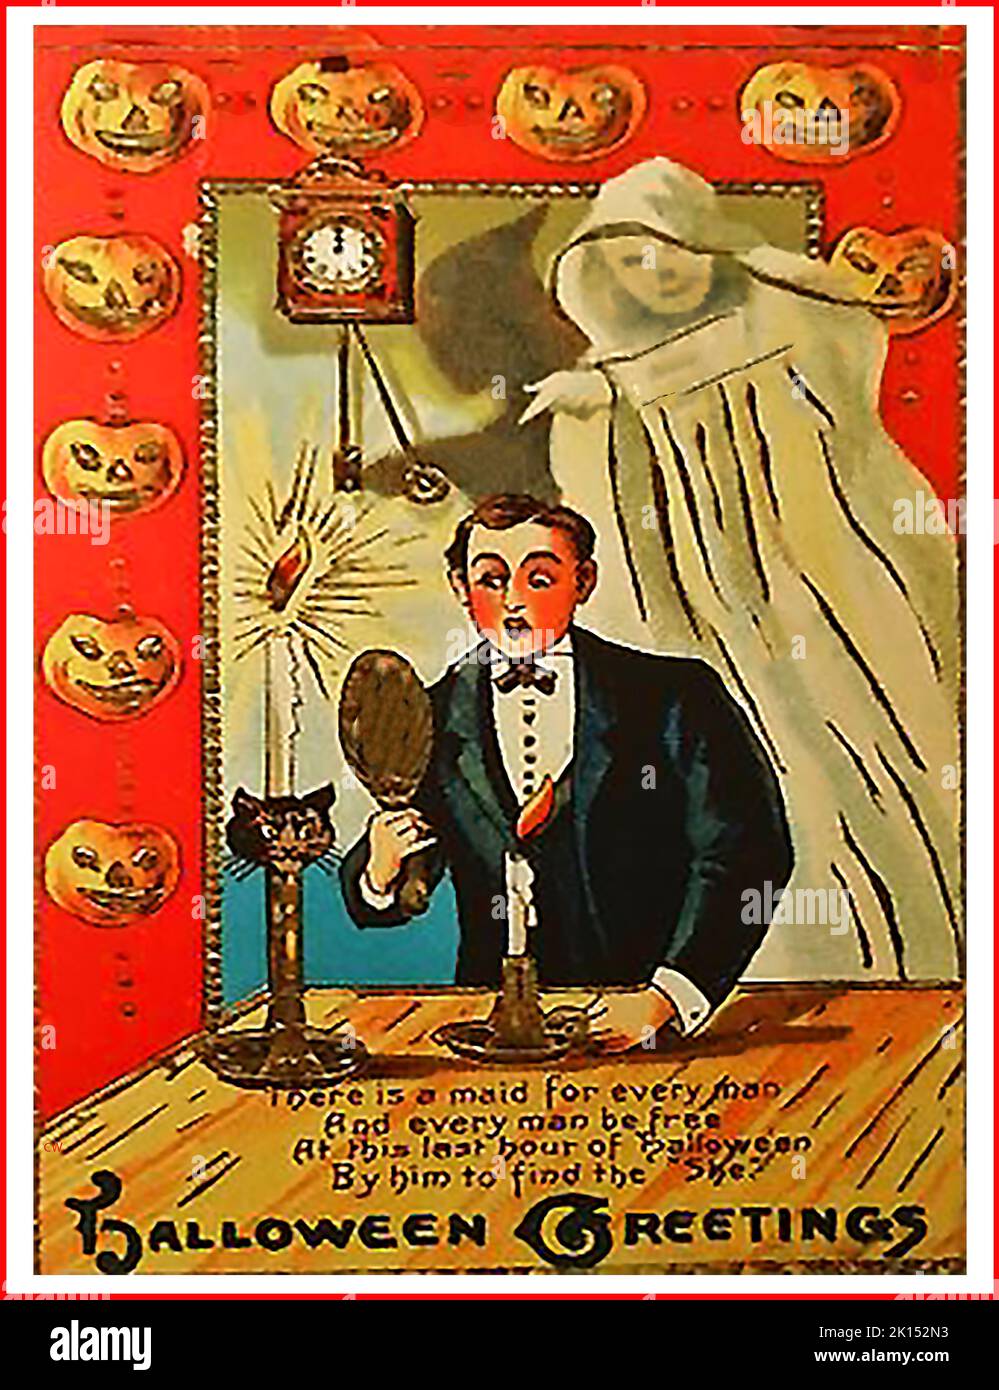 Una vieja tarjeta de felicitación de Halloween con un fantasma y un espejo mágico que se suponía que revelaría el rostro de la persona con la que alguien se casaría, si se le mirara durante la última hora de Halloween Foto de stock